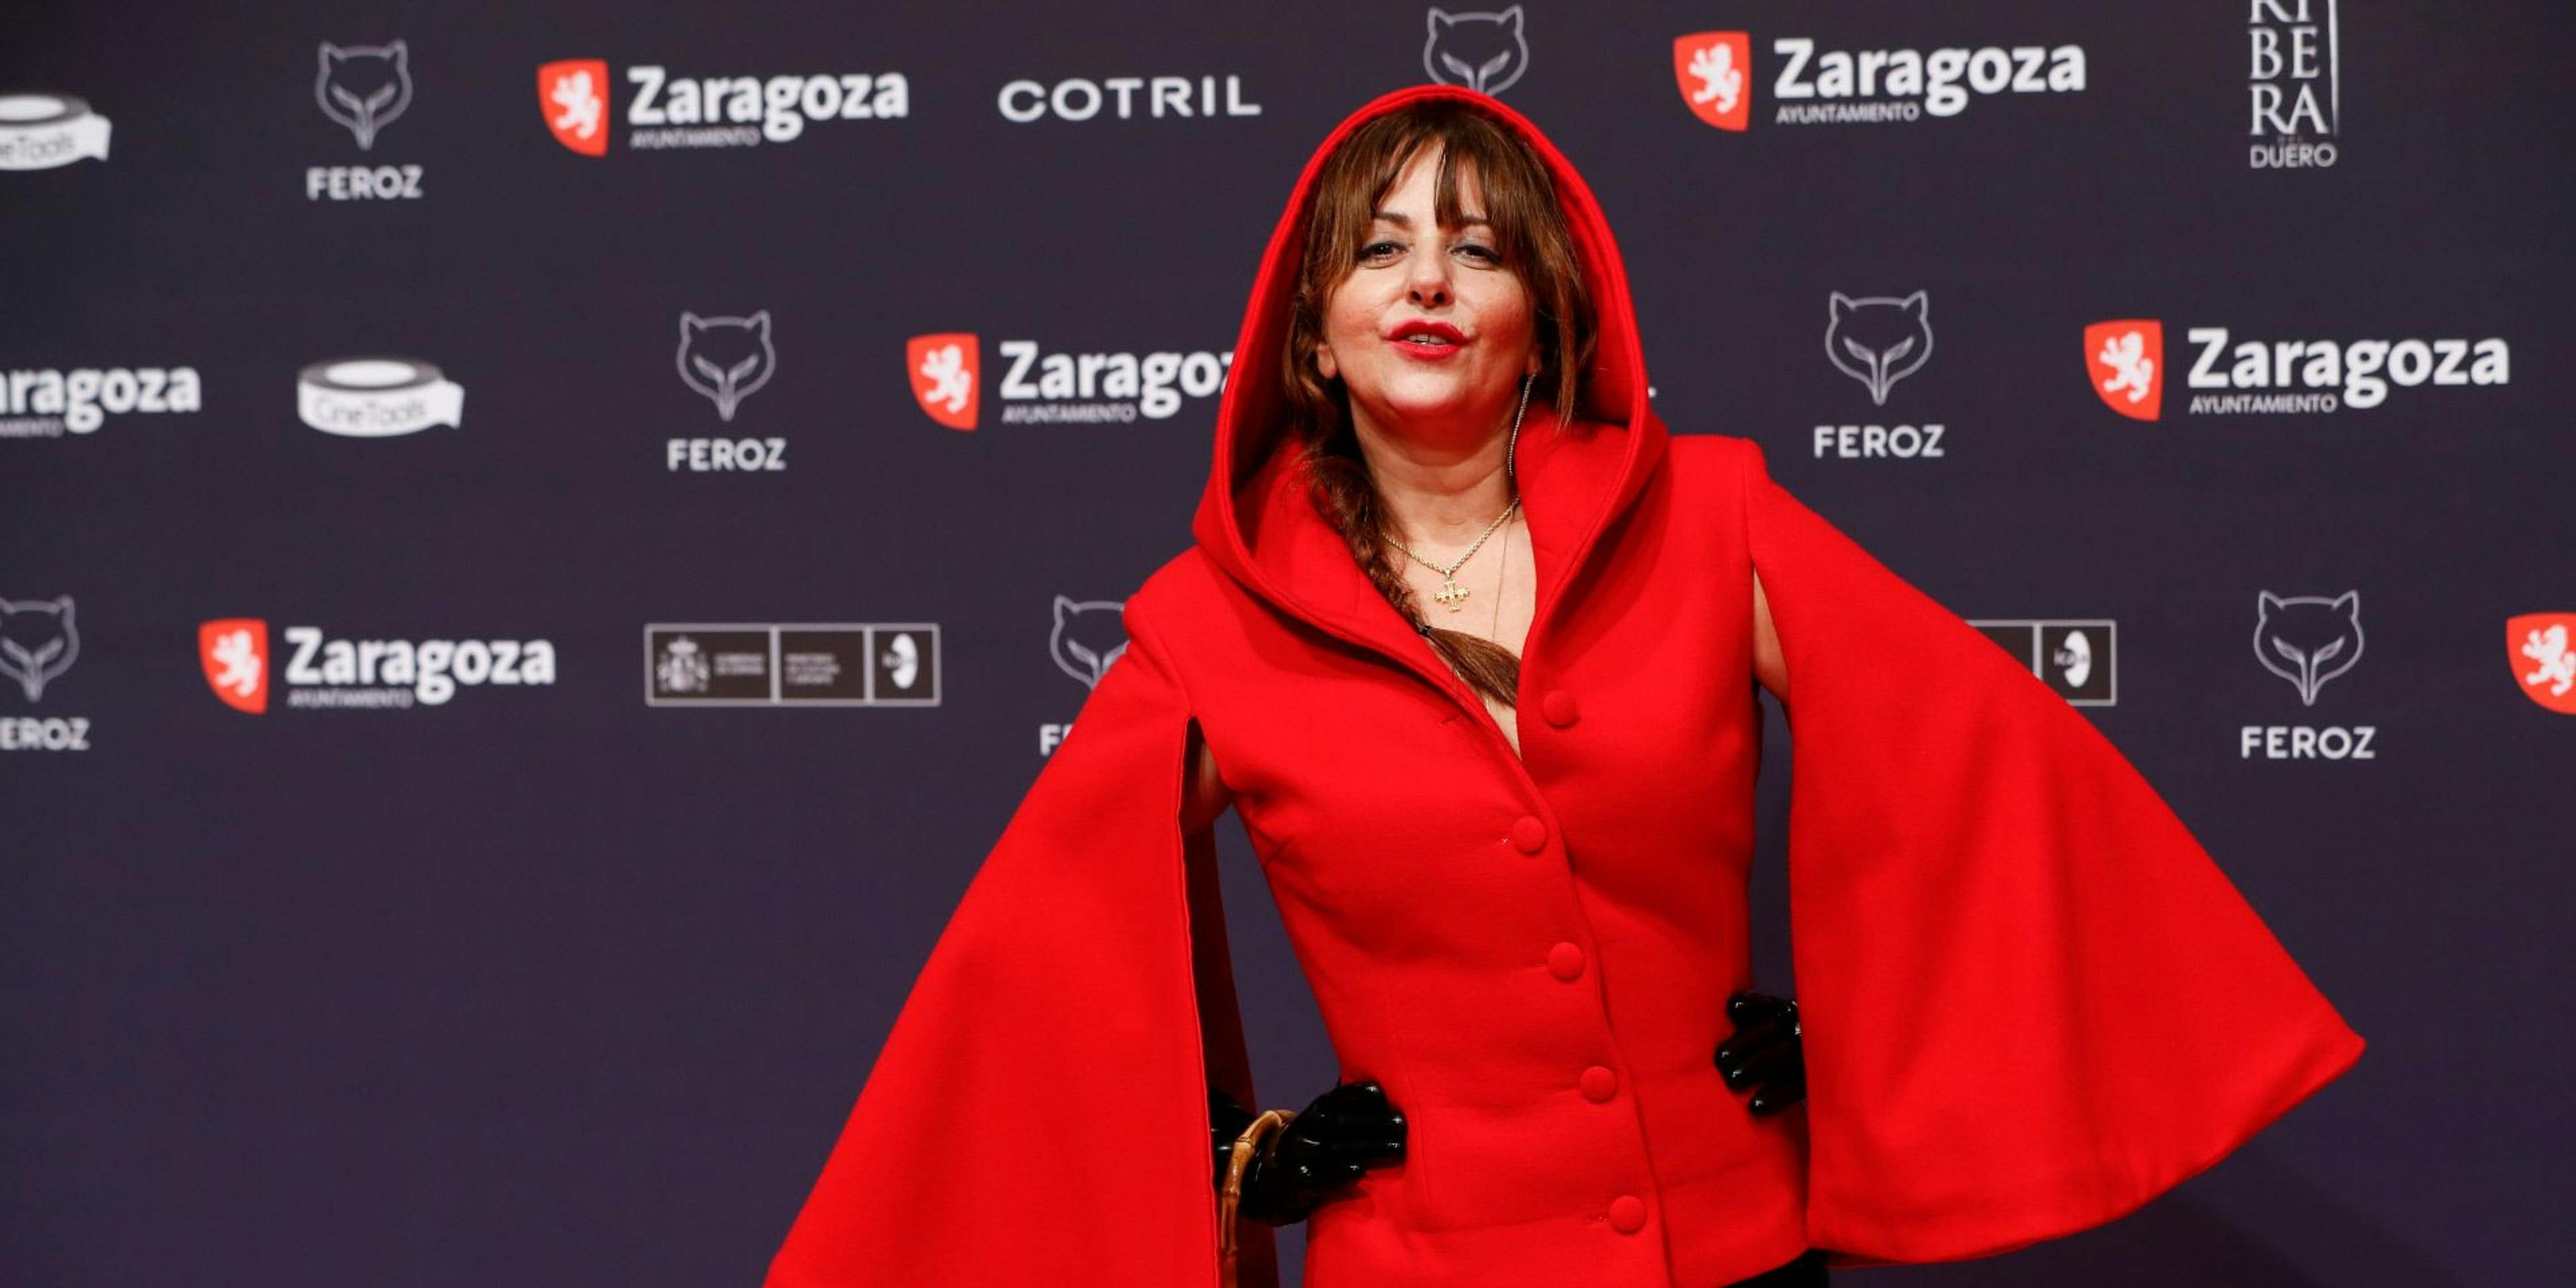 La actriz y cómica Yolanda Ramos posa en la alfombra roja de los Premios Feroz 2022, celebrados en Zaragoza